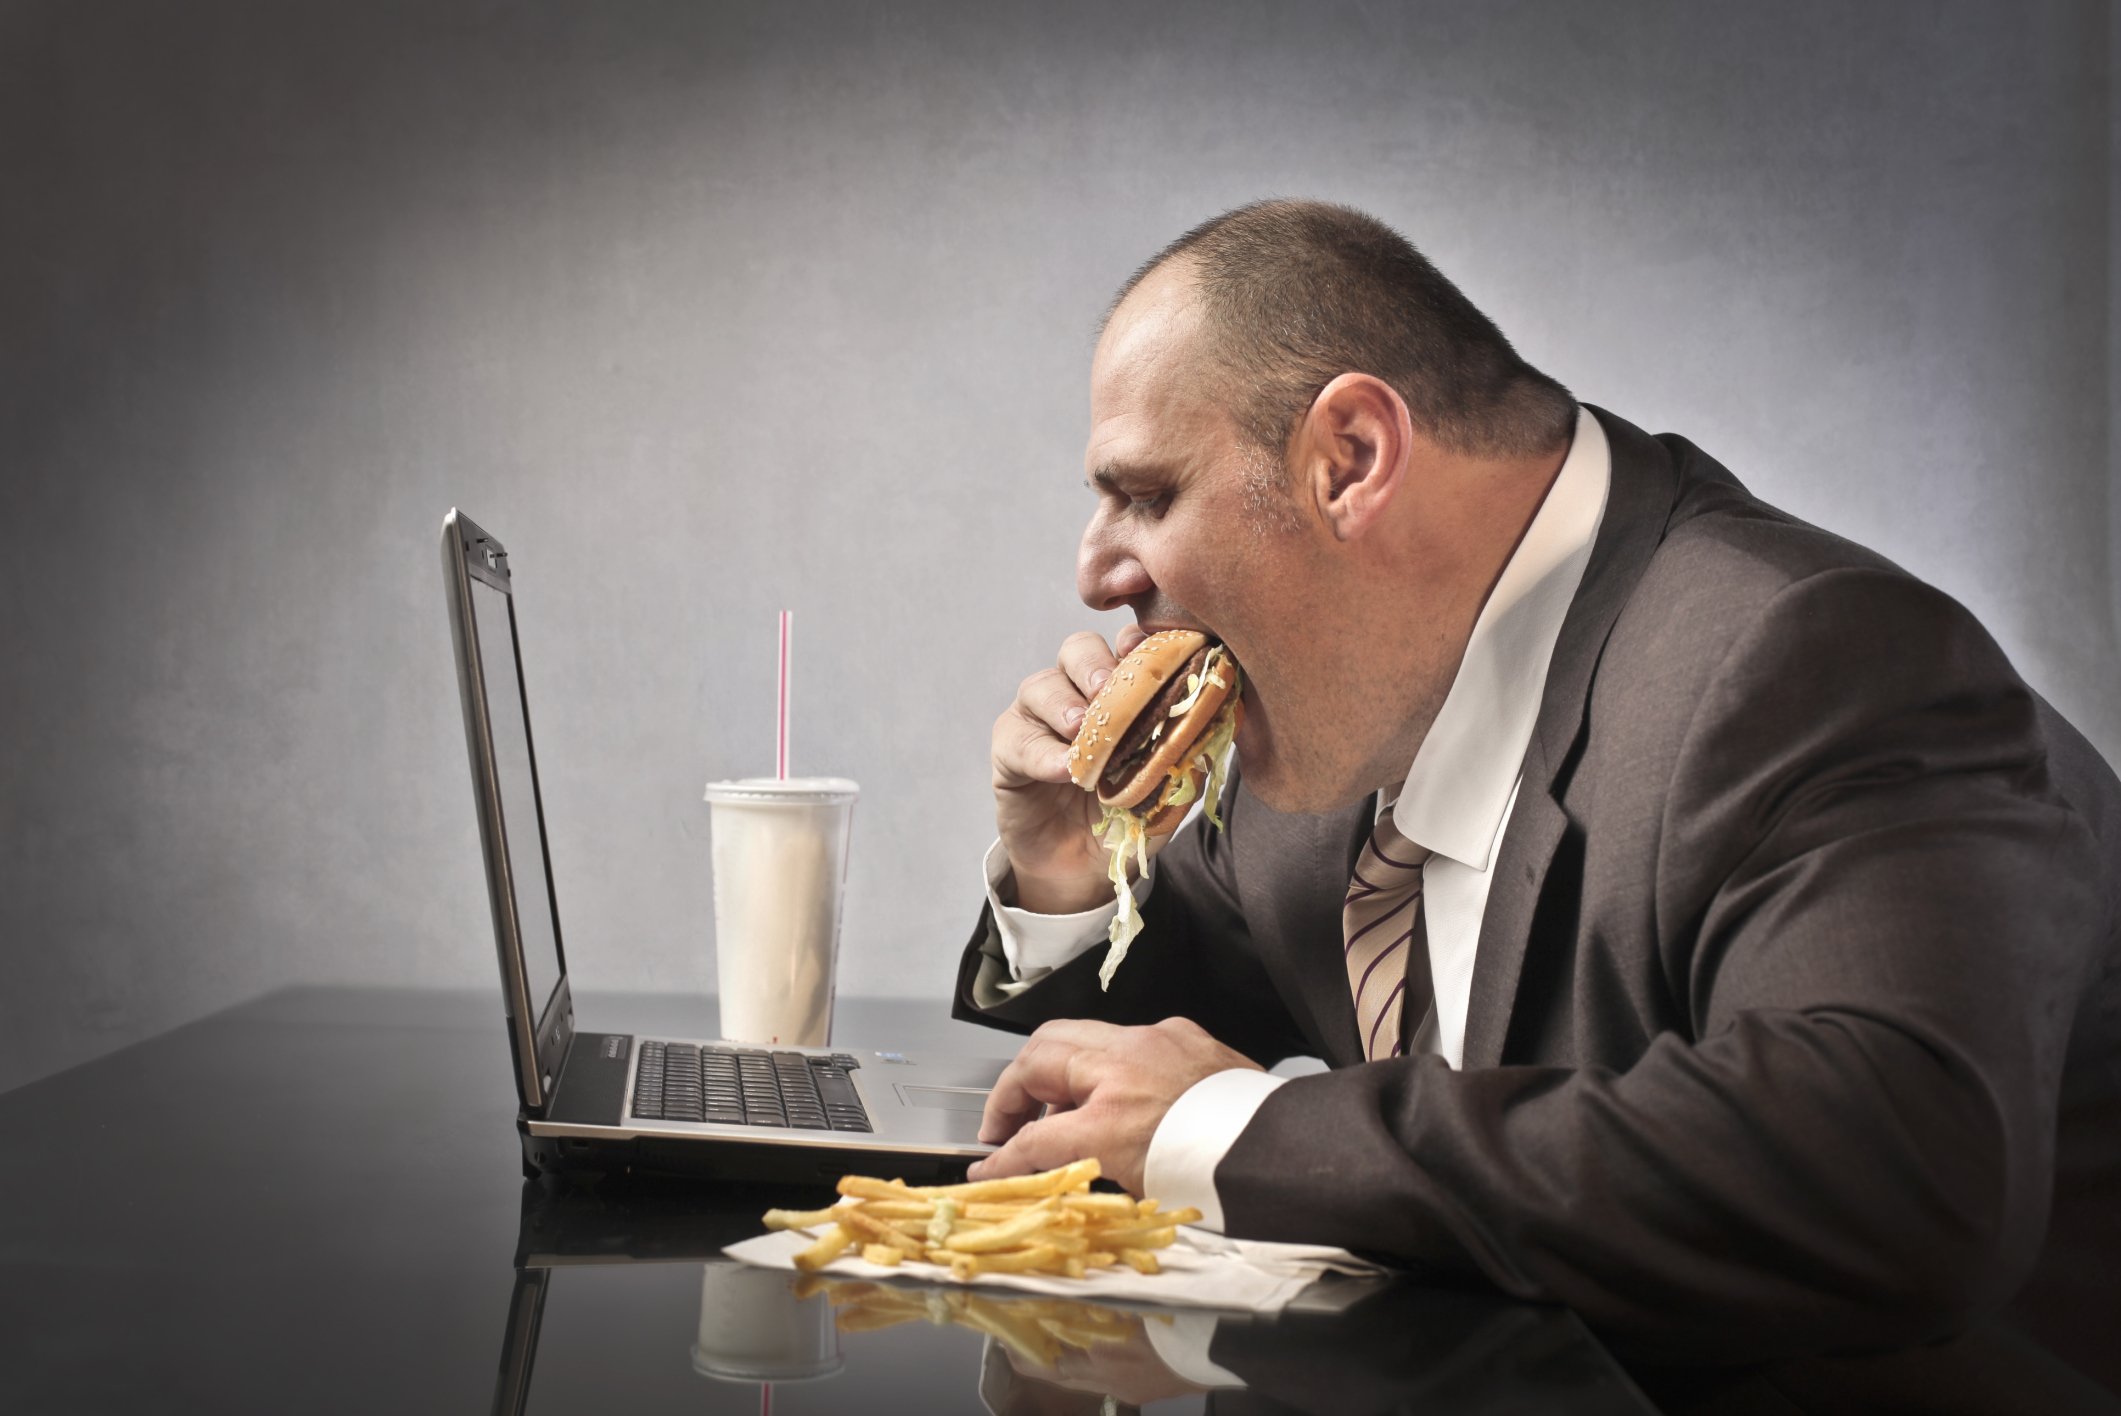 9 23 social media and obesity.jpg?resize=412,232 - 5 motivos pelos quais as pessoas engordam no trabalho